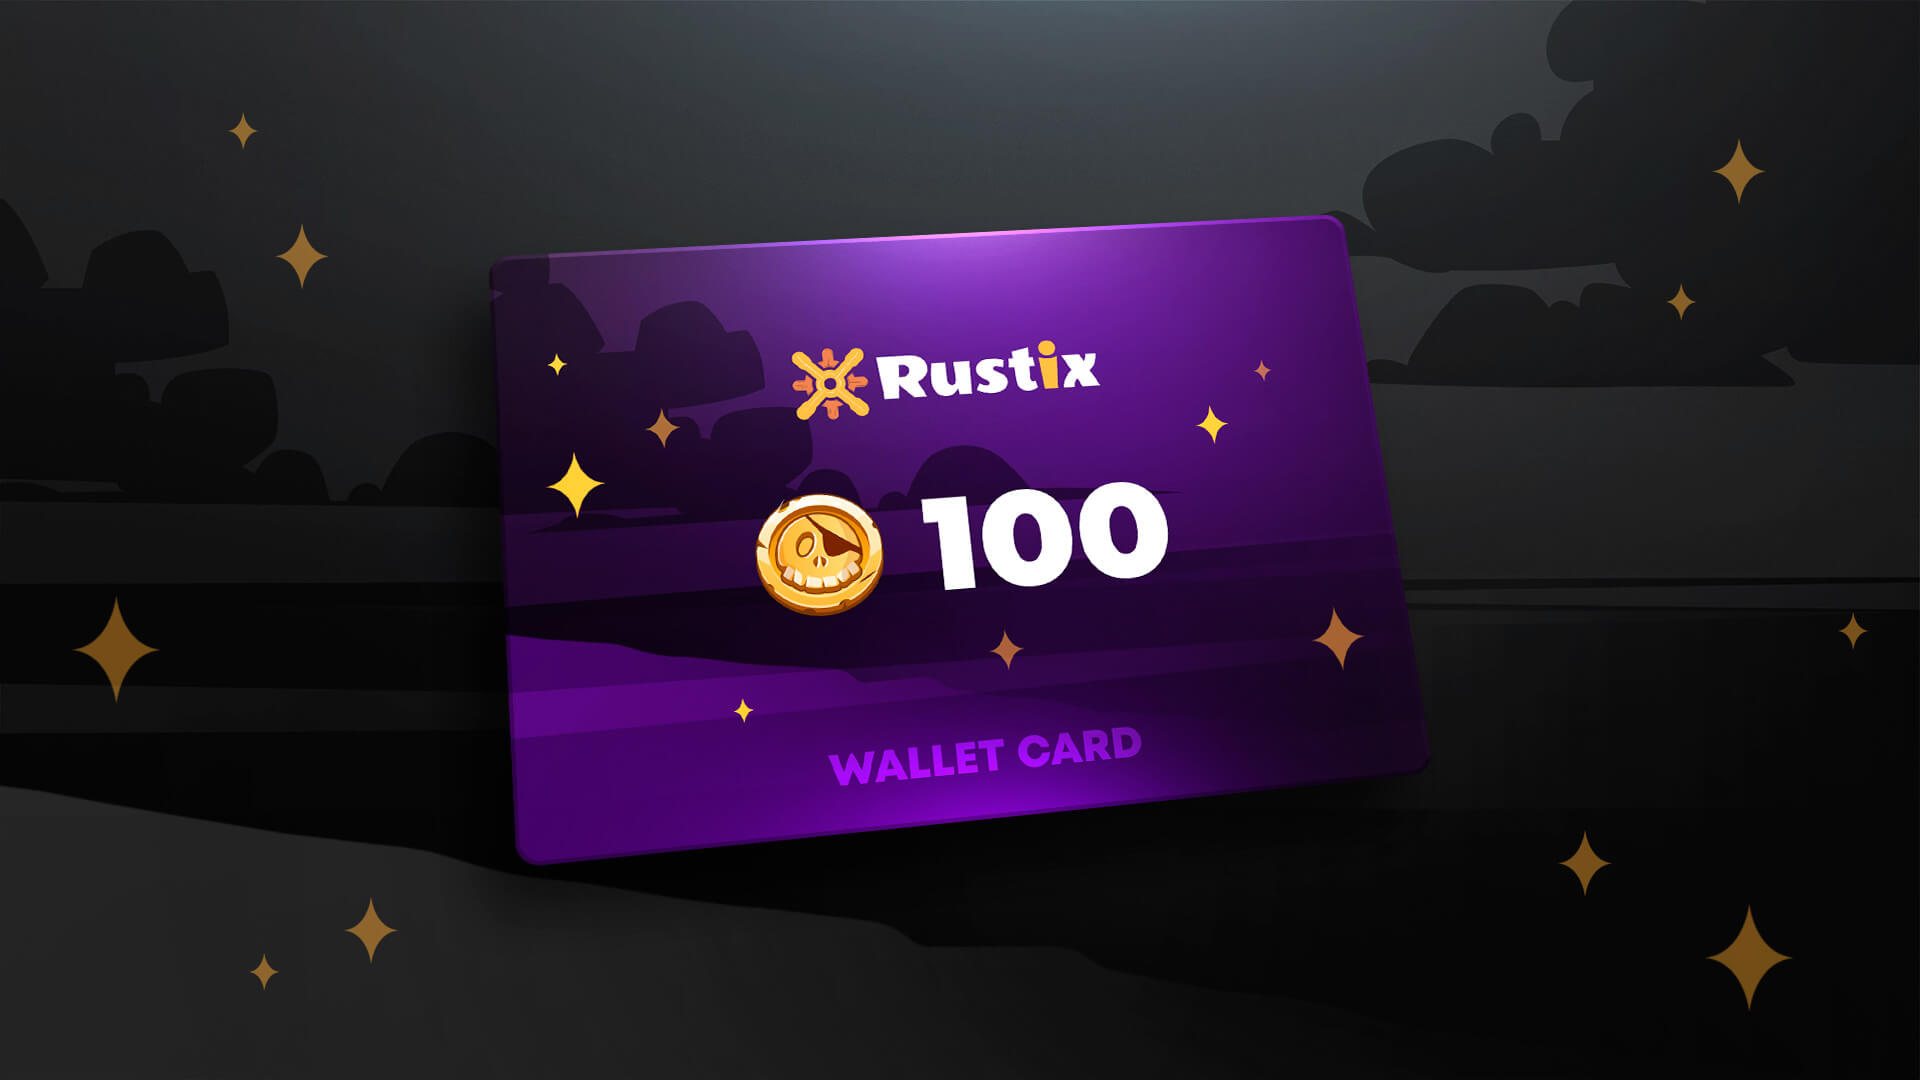 Rustix.io 100 USD Wallet Card Code 113 $